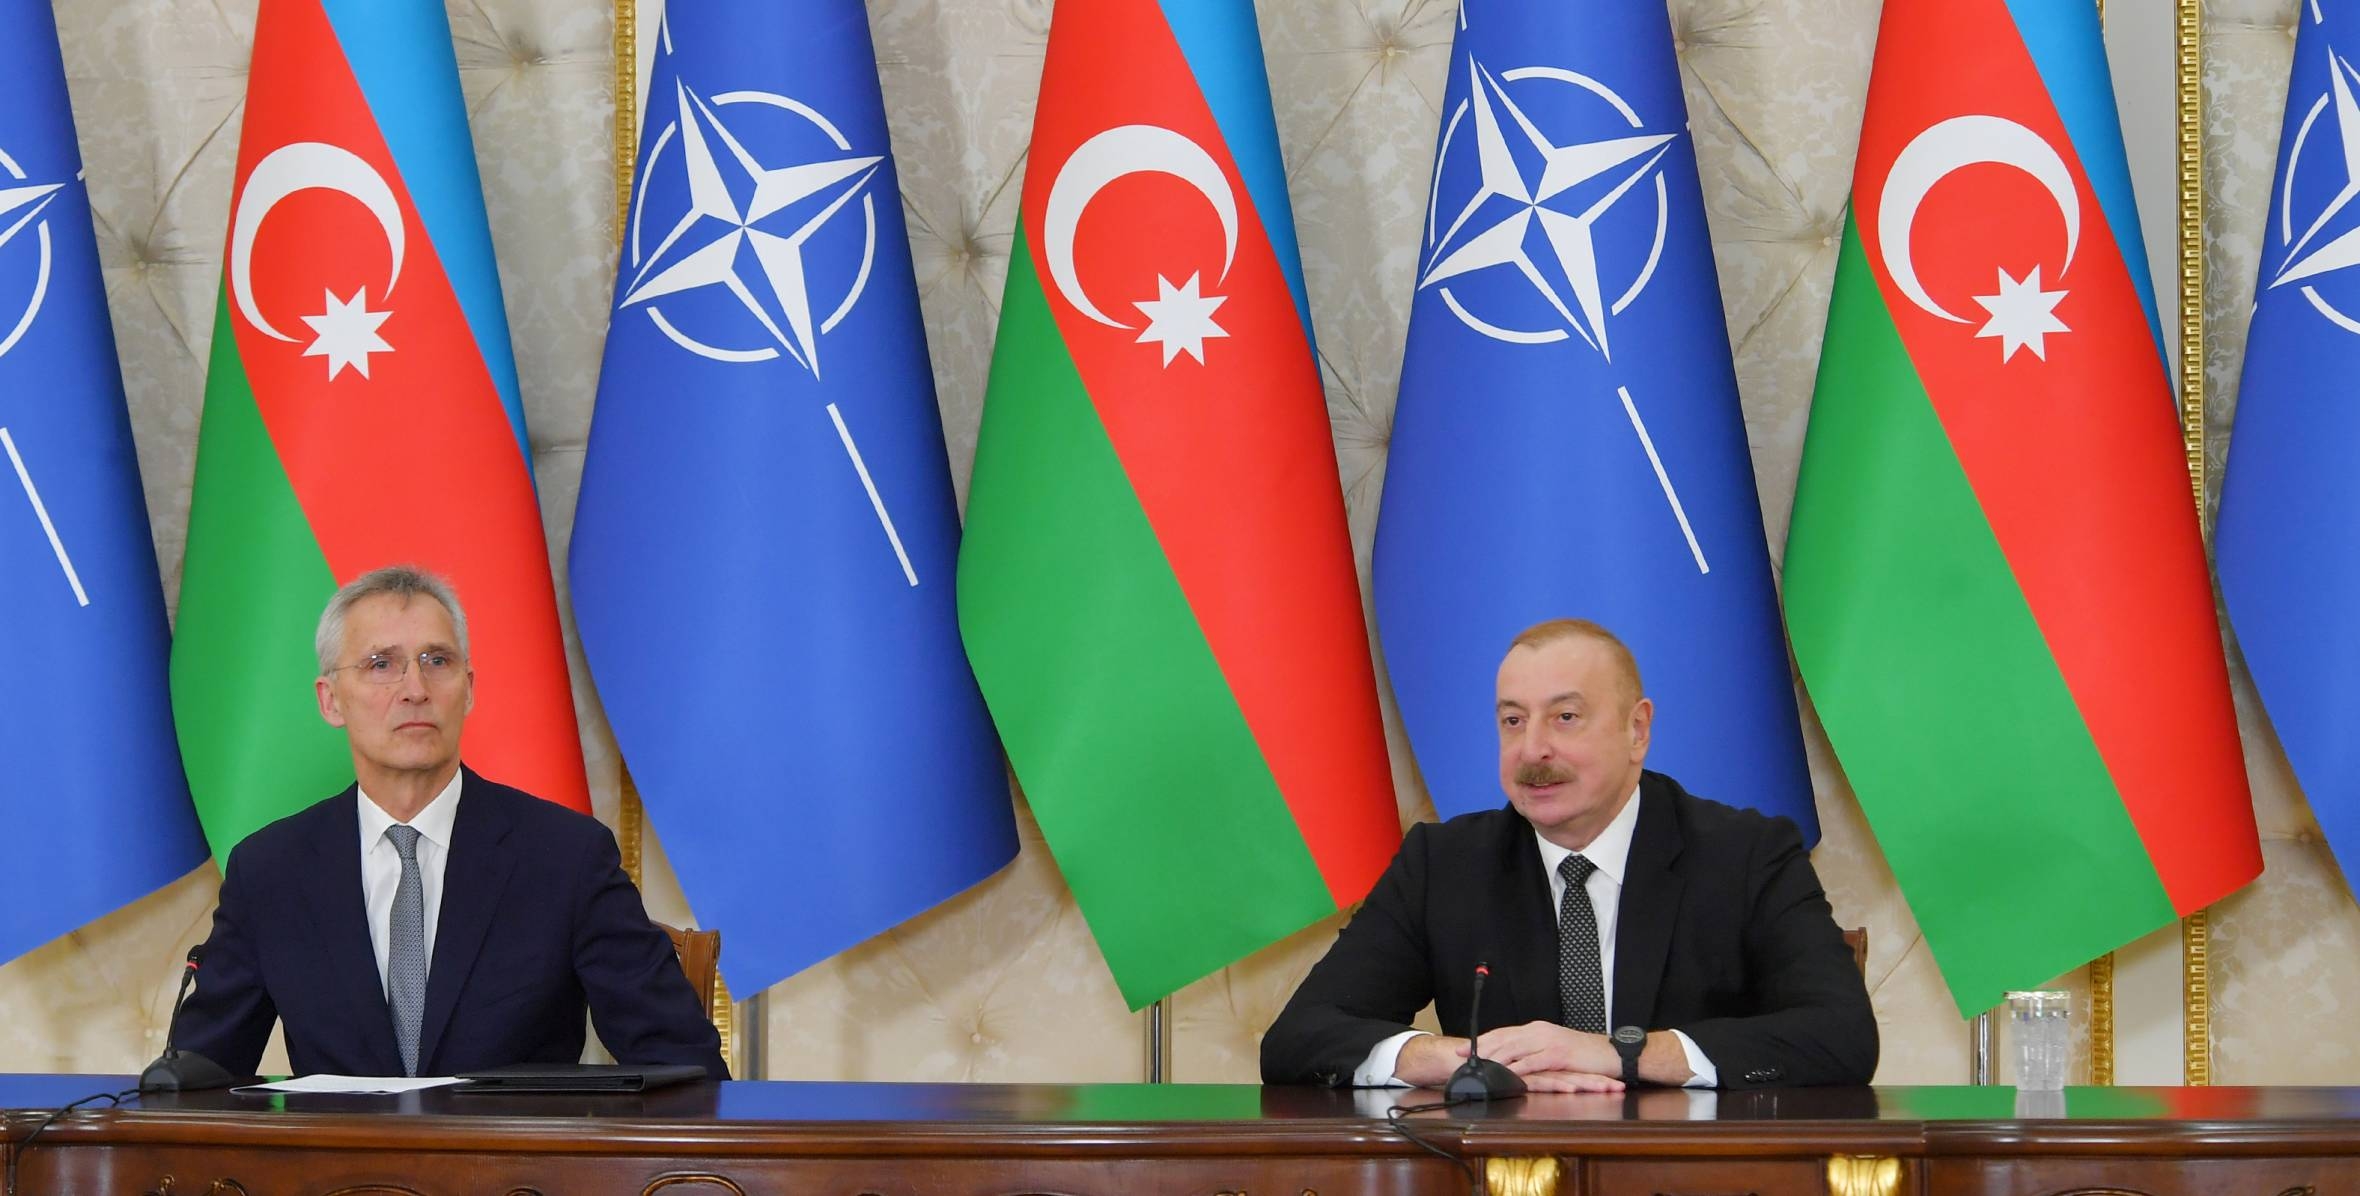 Azərbaycan NATO ilə əməkdaşlığa sadiqdir